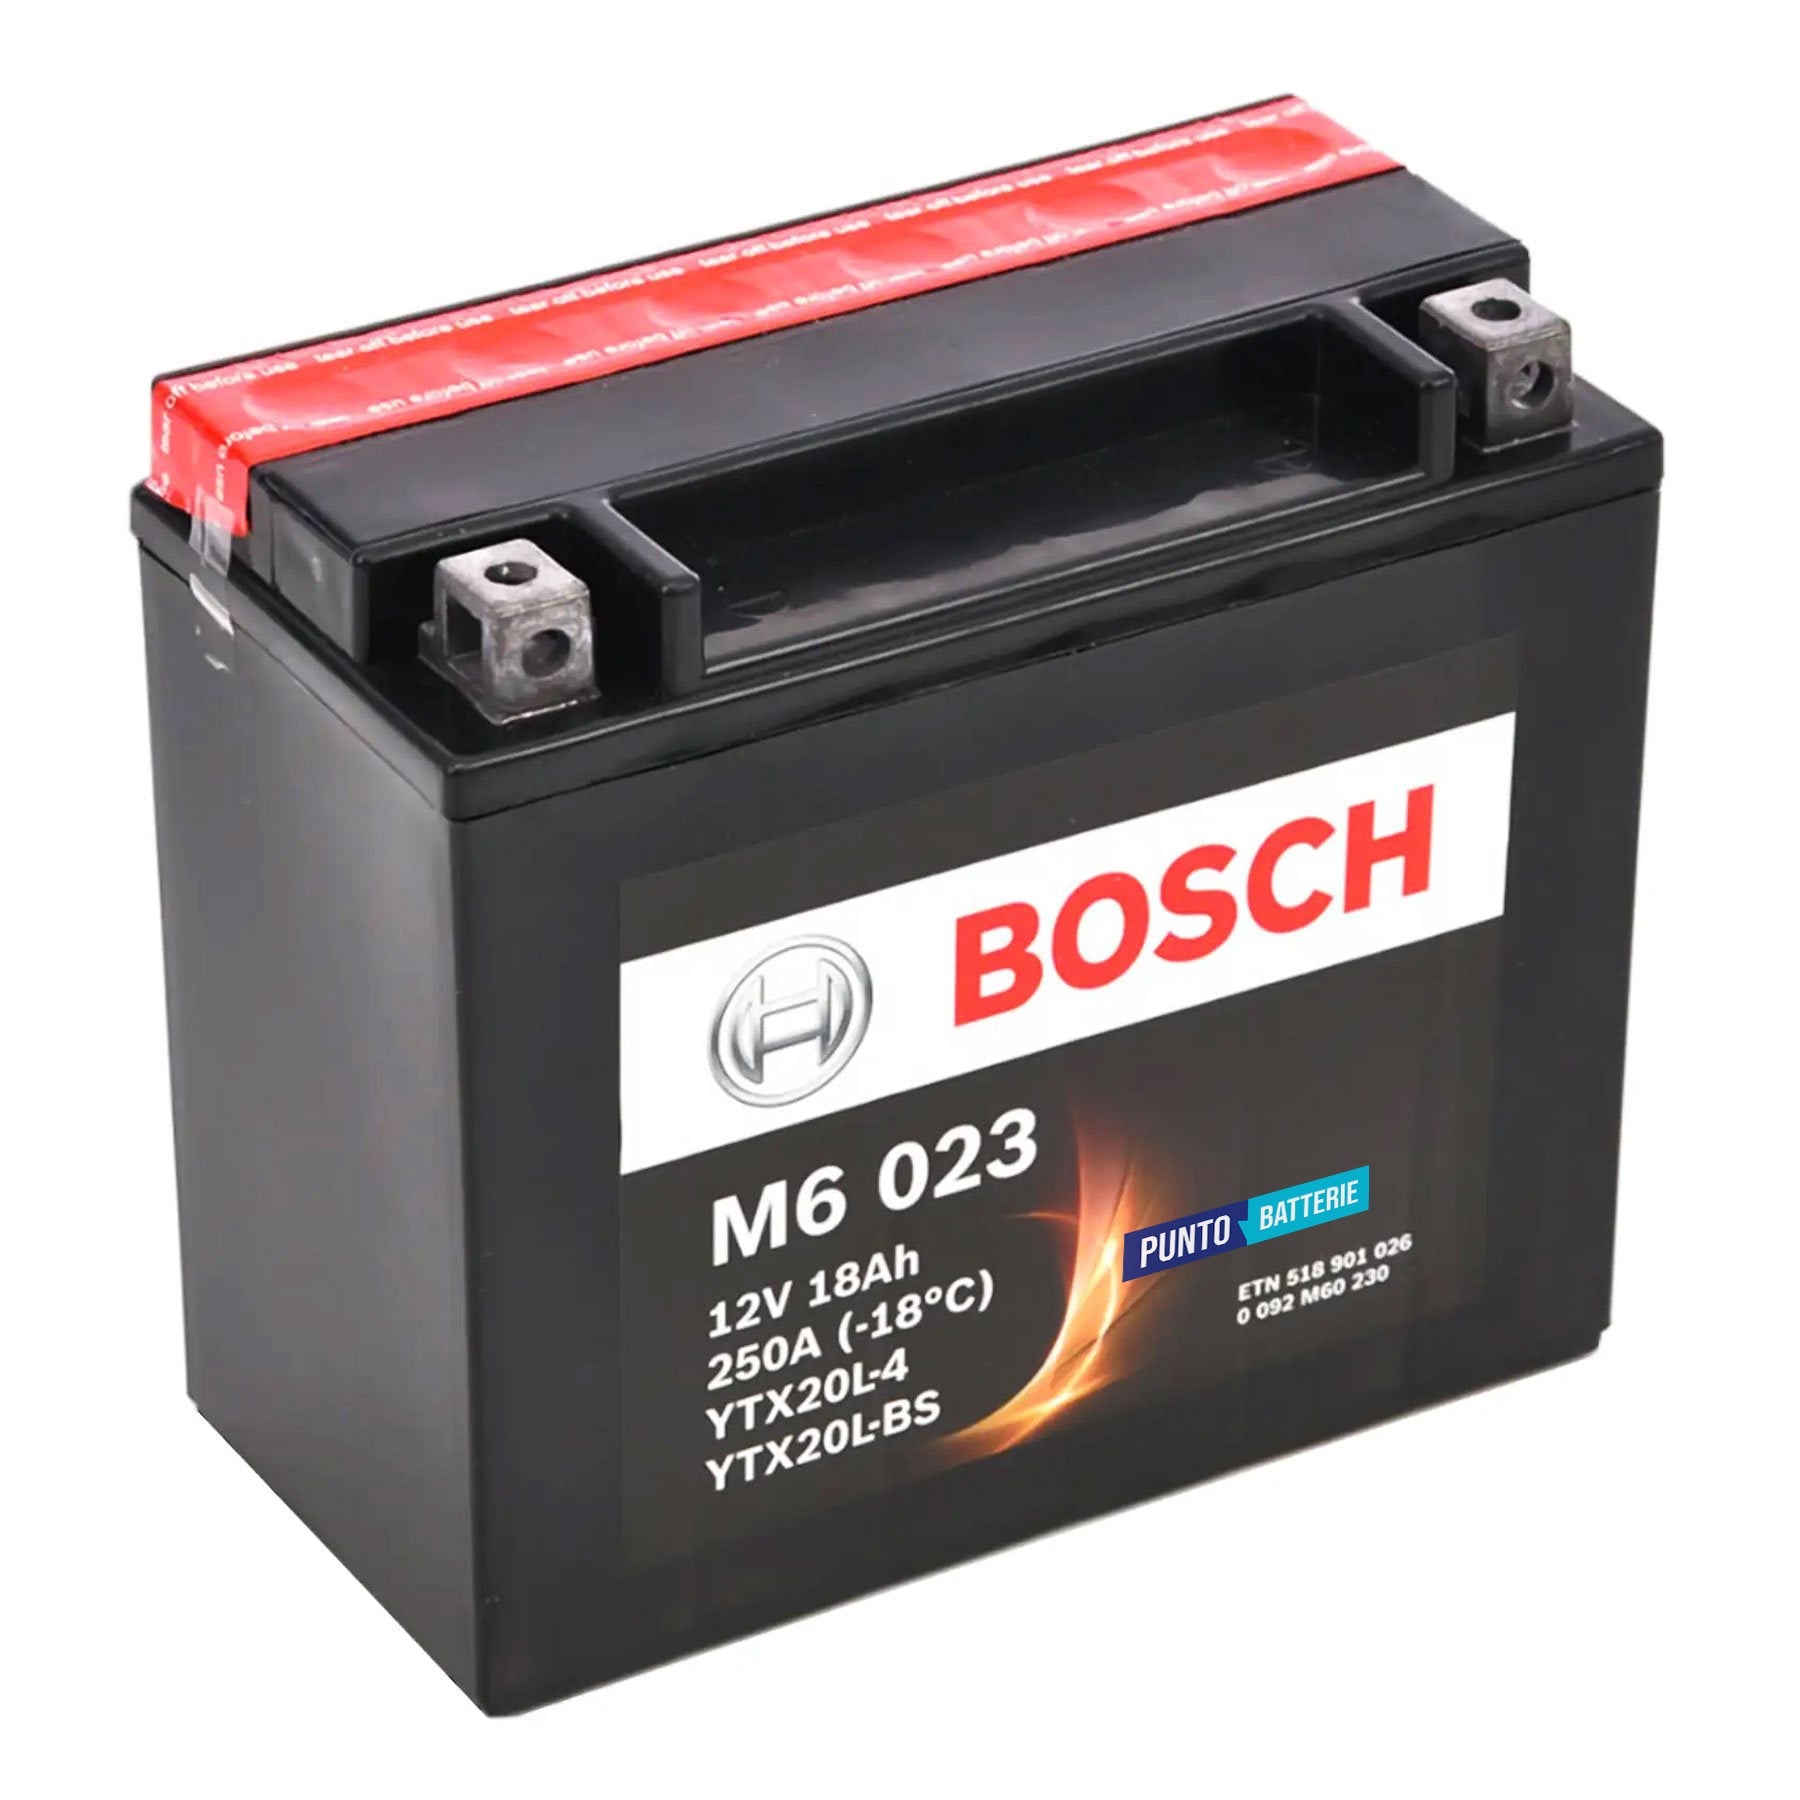 Batteria originale Bosch M6 M6023, dimensioni 175 x 87 x 155, polo positivo a destra, 12 volt, 18 amperora, 250 ampere. Batteria per moto, scooter e powersport.